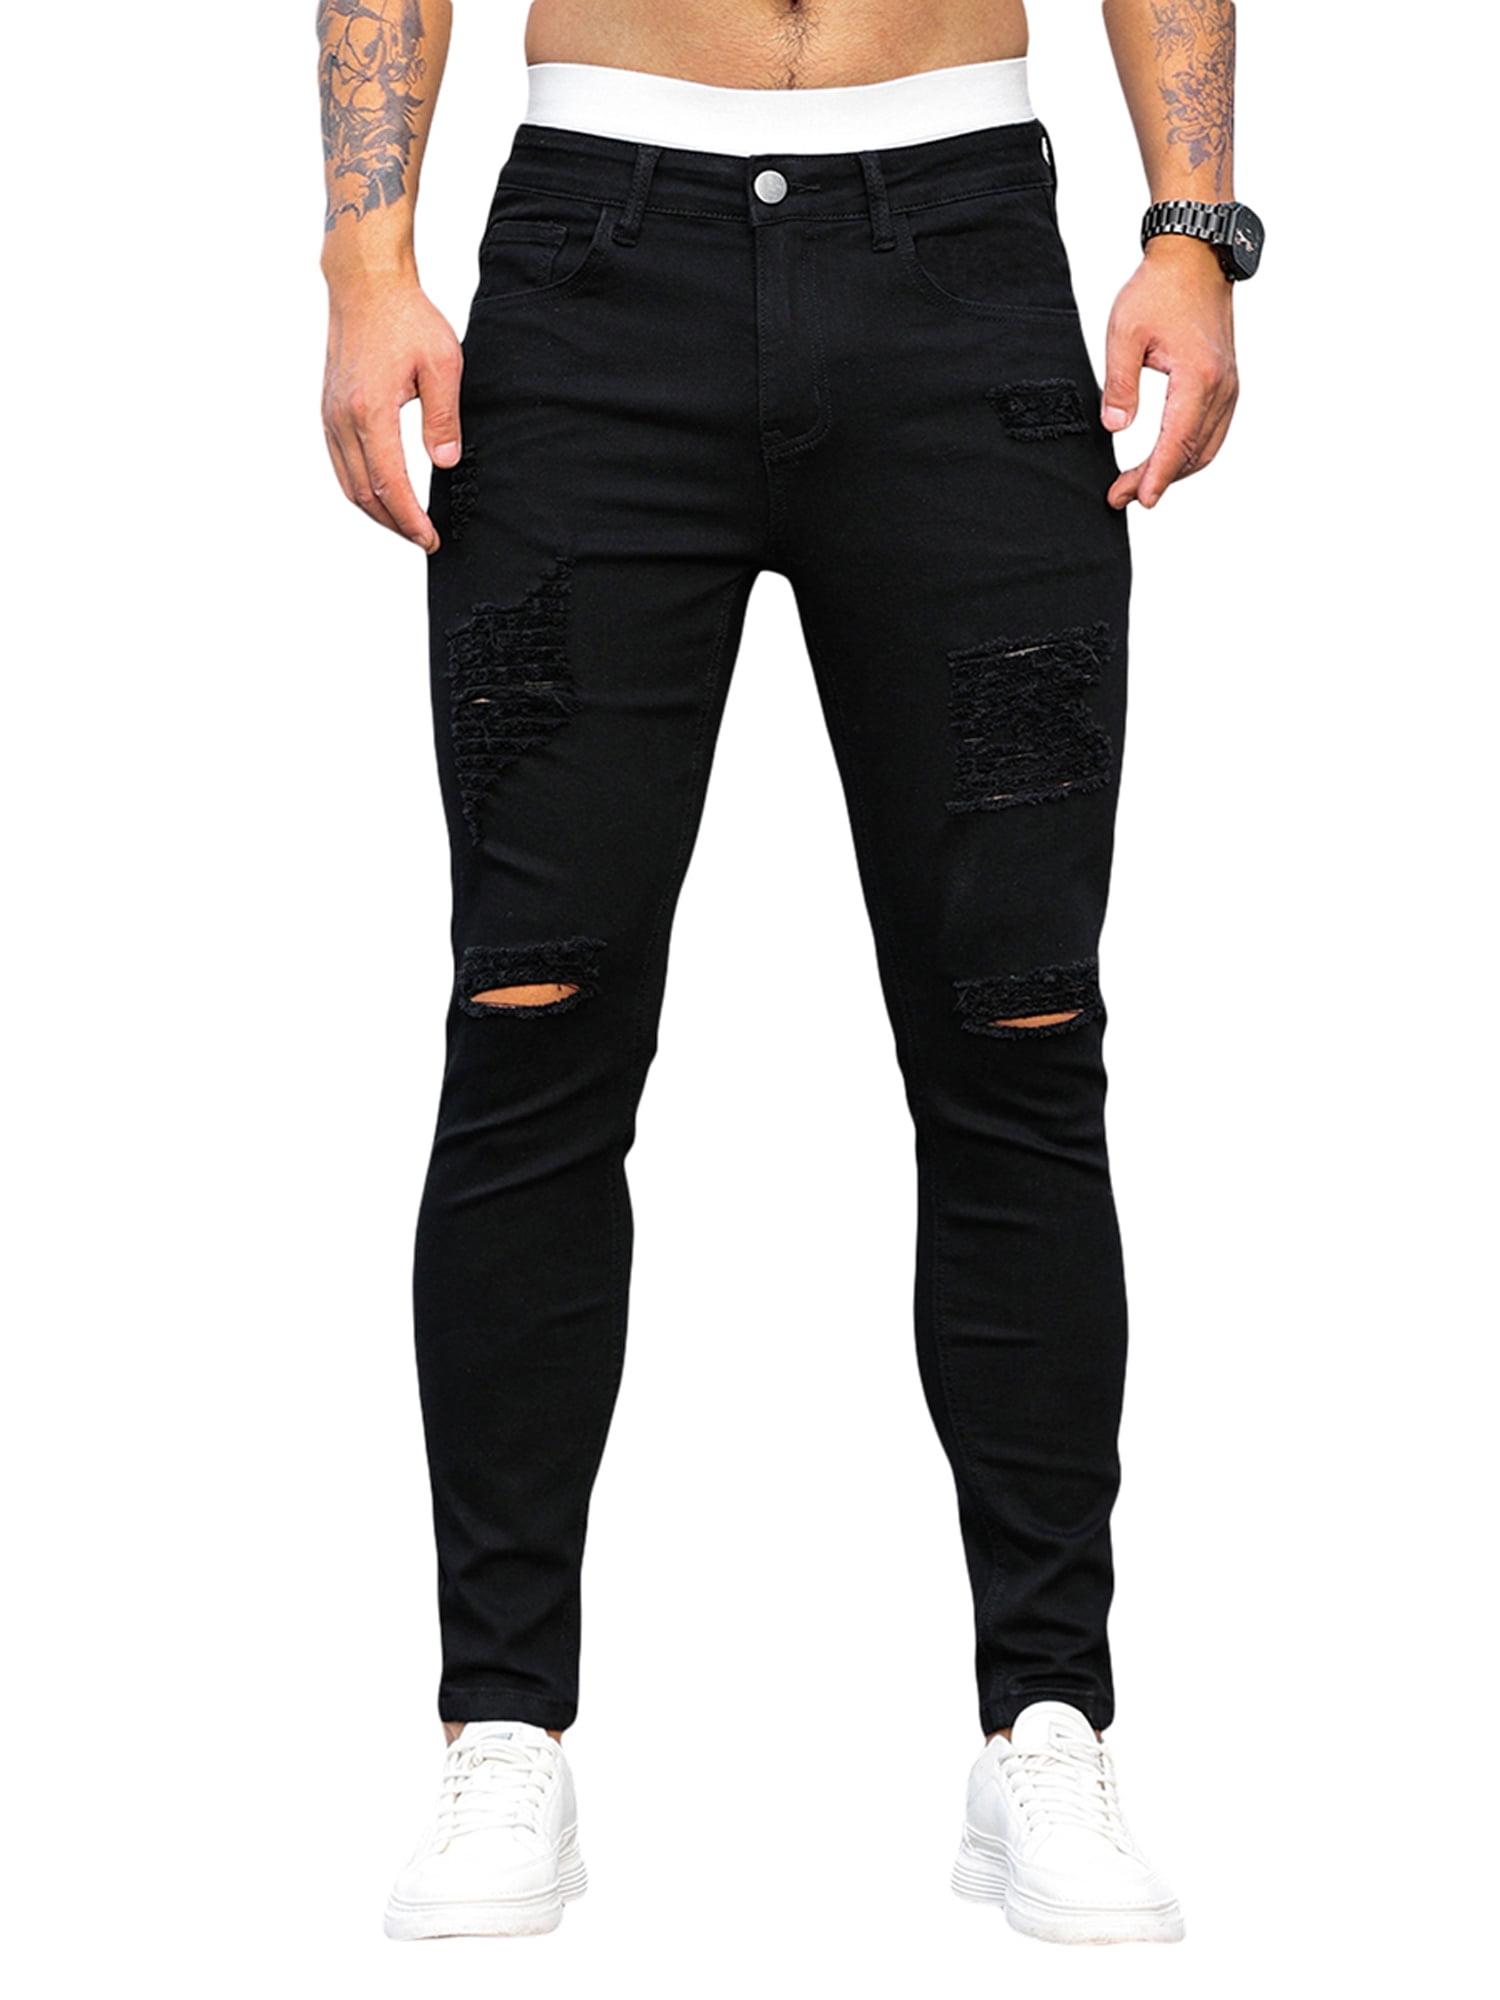 en gang dør Låne Men's Black Ripped Jeans Slim Fit Skinny Stretch Jeans Pants - Walmart.com